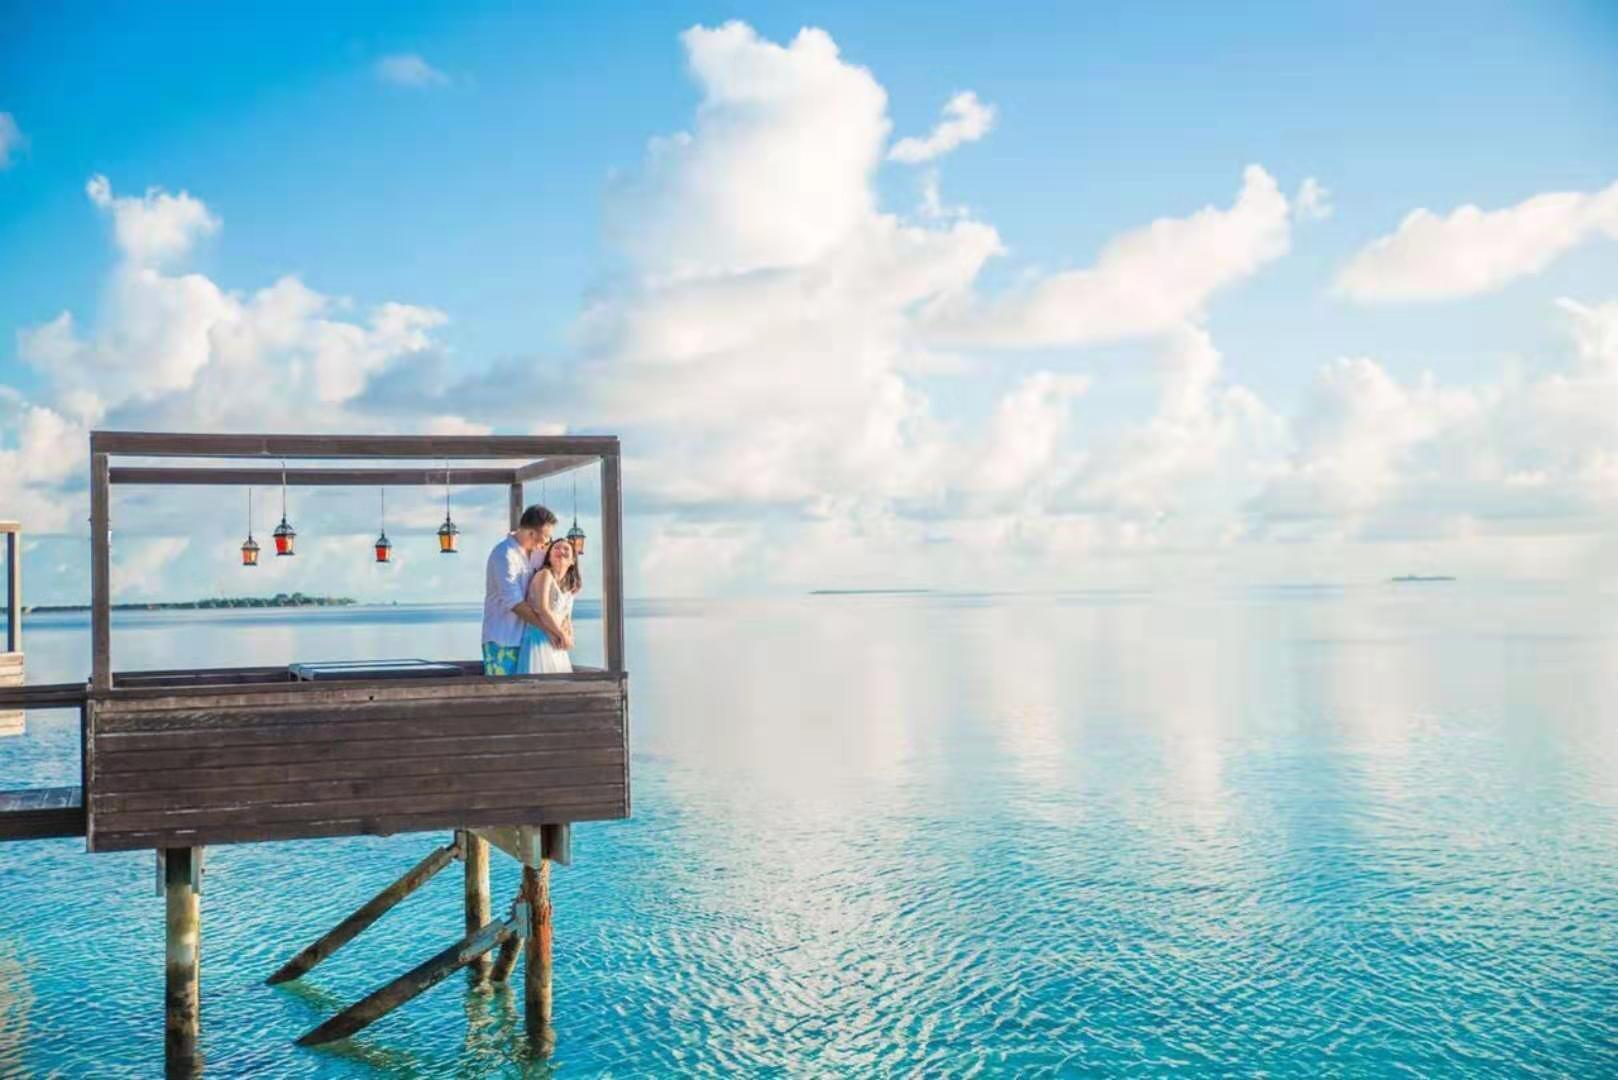 #消夏计划#马尔代夫莉莉岛Lili beach乘着夕阳寻梦 -游记-马尔代夫-专业代理-海岸线假期-唯一官方网站